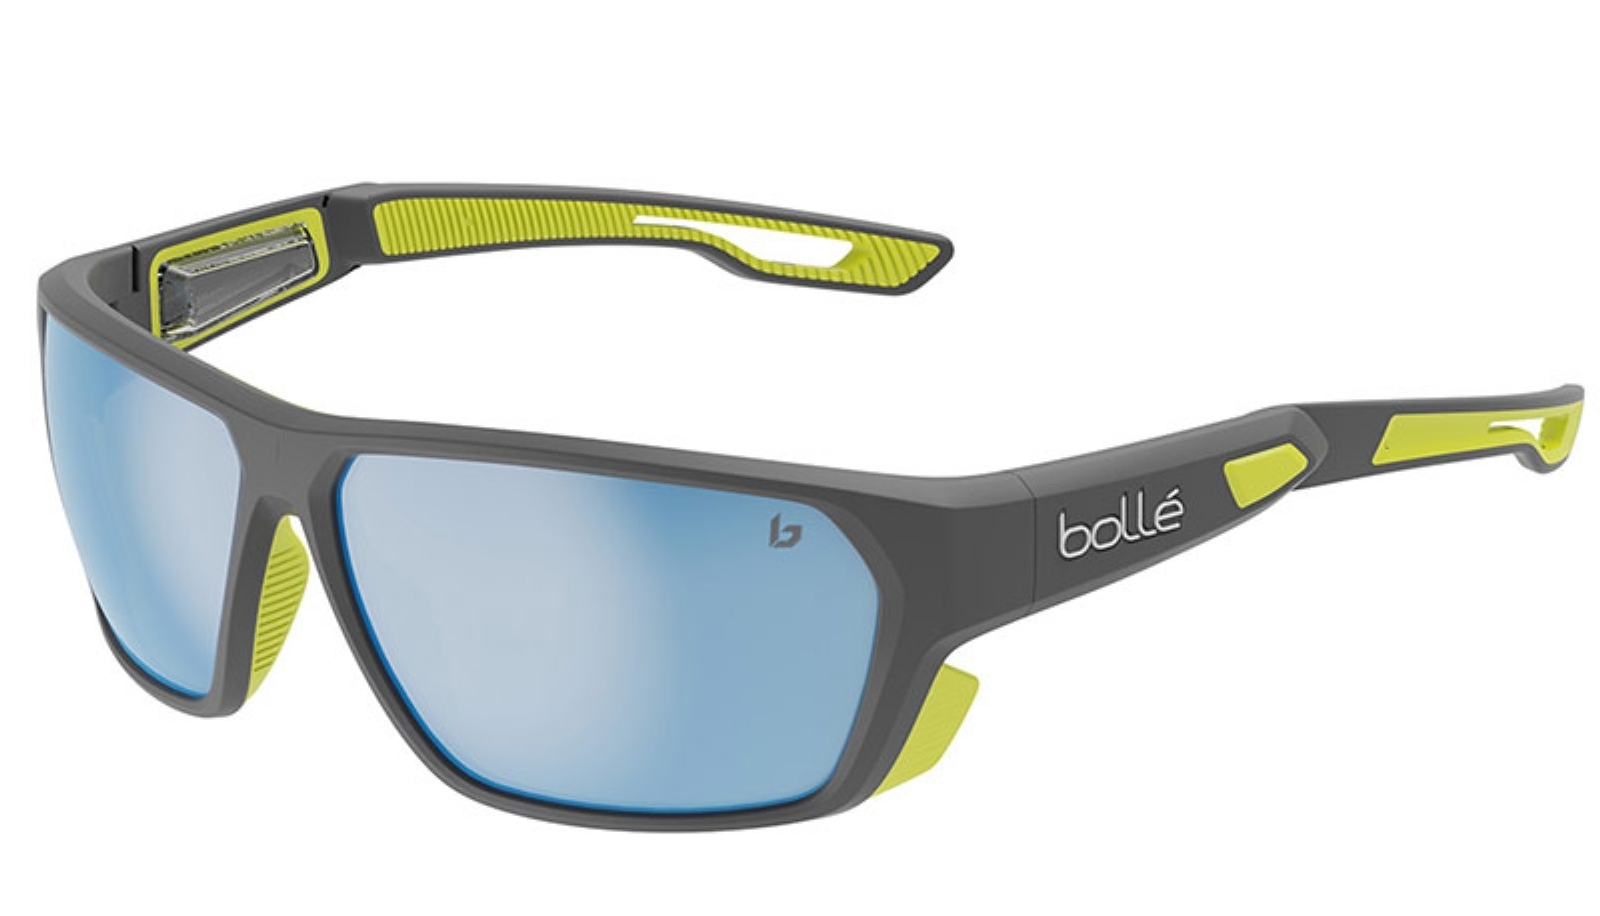  Airfin, lo más nuevo de Bollé en gafas para deportes náuticos